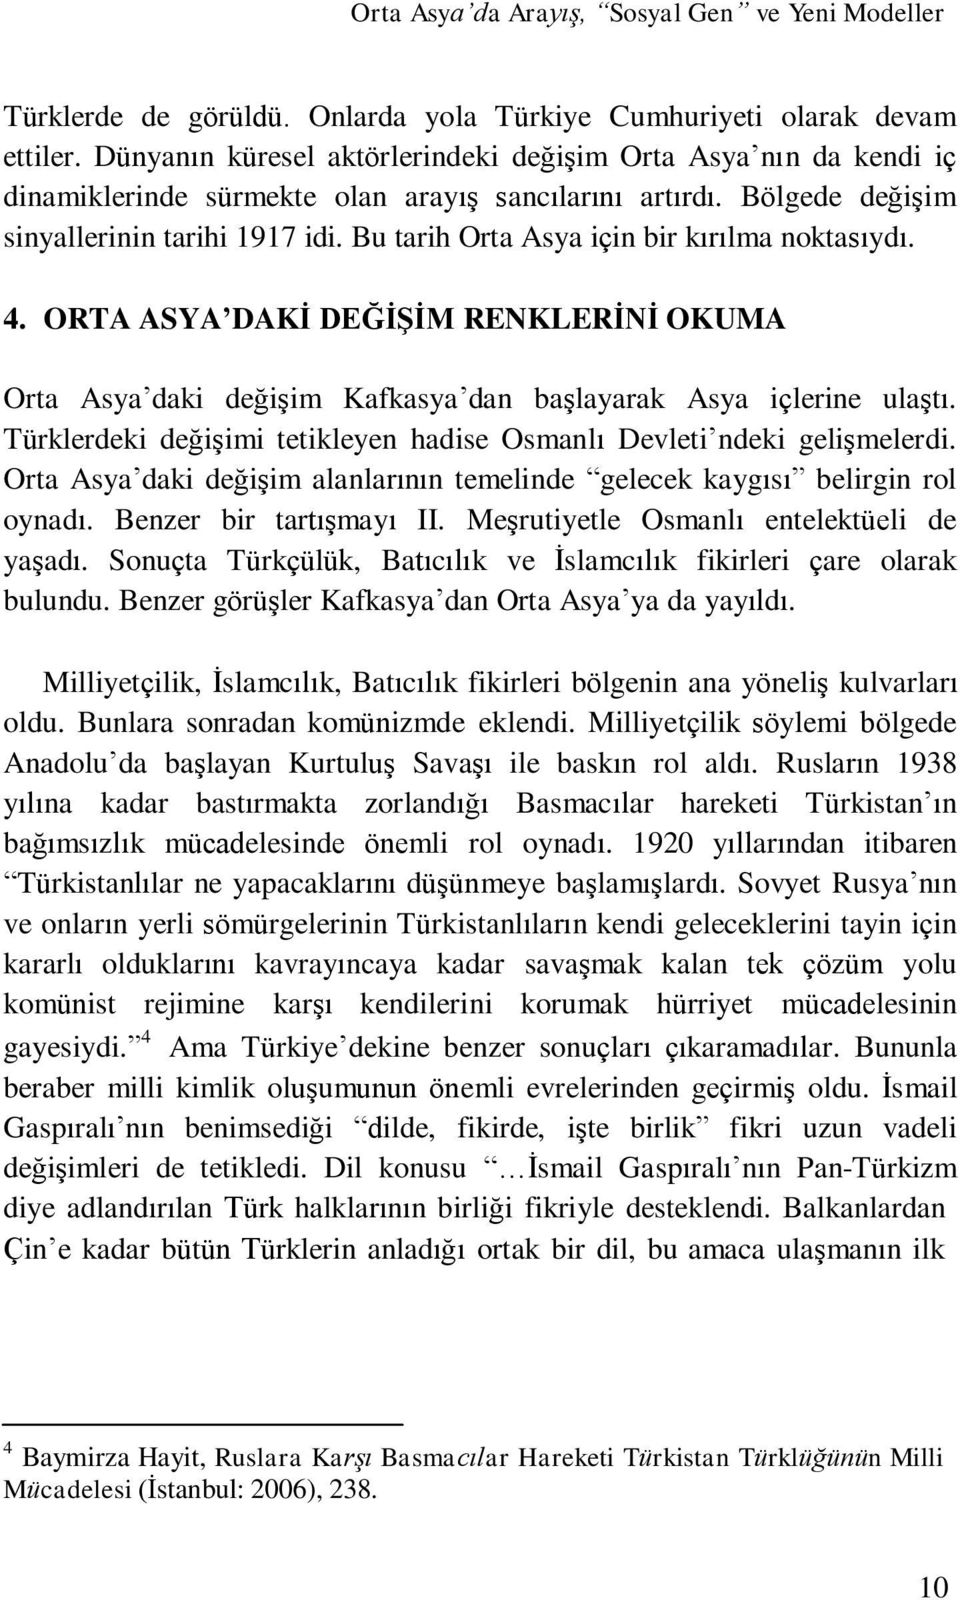 ORTA ASYA DAKİ DEĞİŞİM RENKLERİNİ OKUMA Orta Asya daki değişim Kafkasya dan başlayarak Asya içlerine ulaştı. Türklerdeki değişimi tetikleyen hadise Osmanlı Devleti ndeki gelişmelerdi.